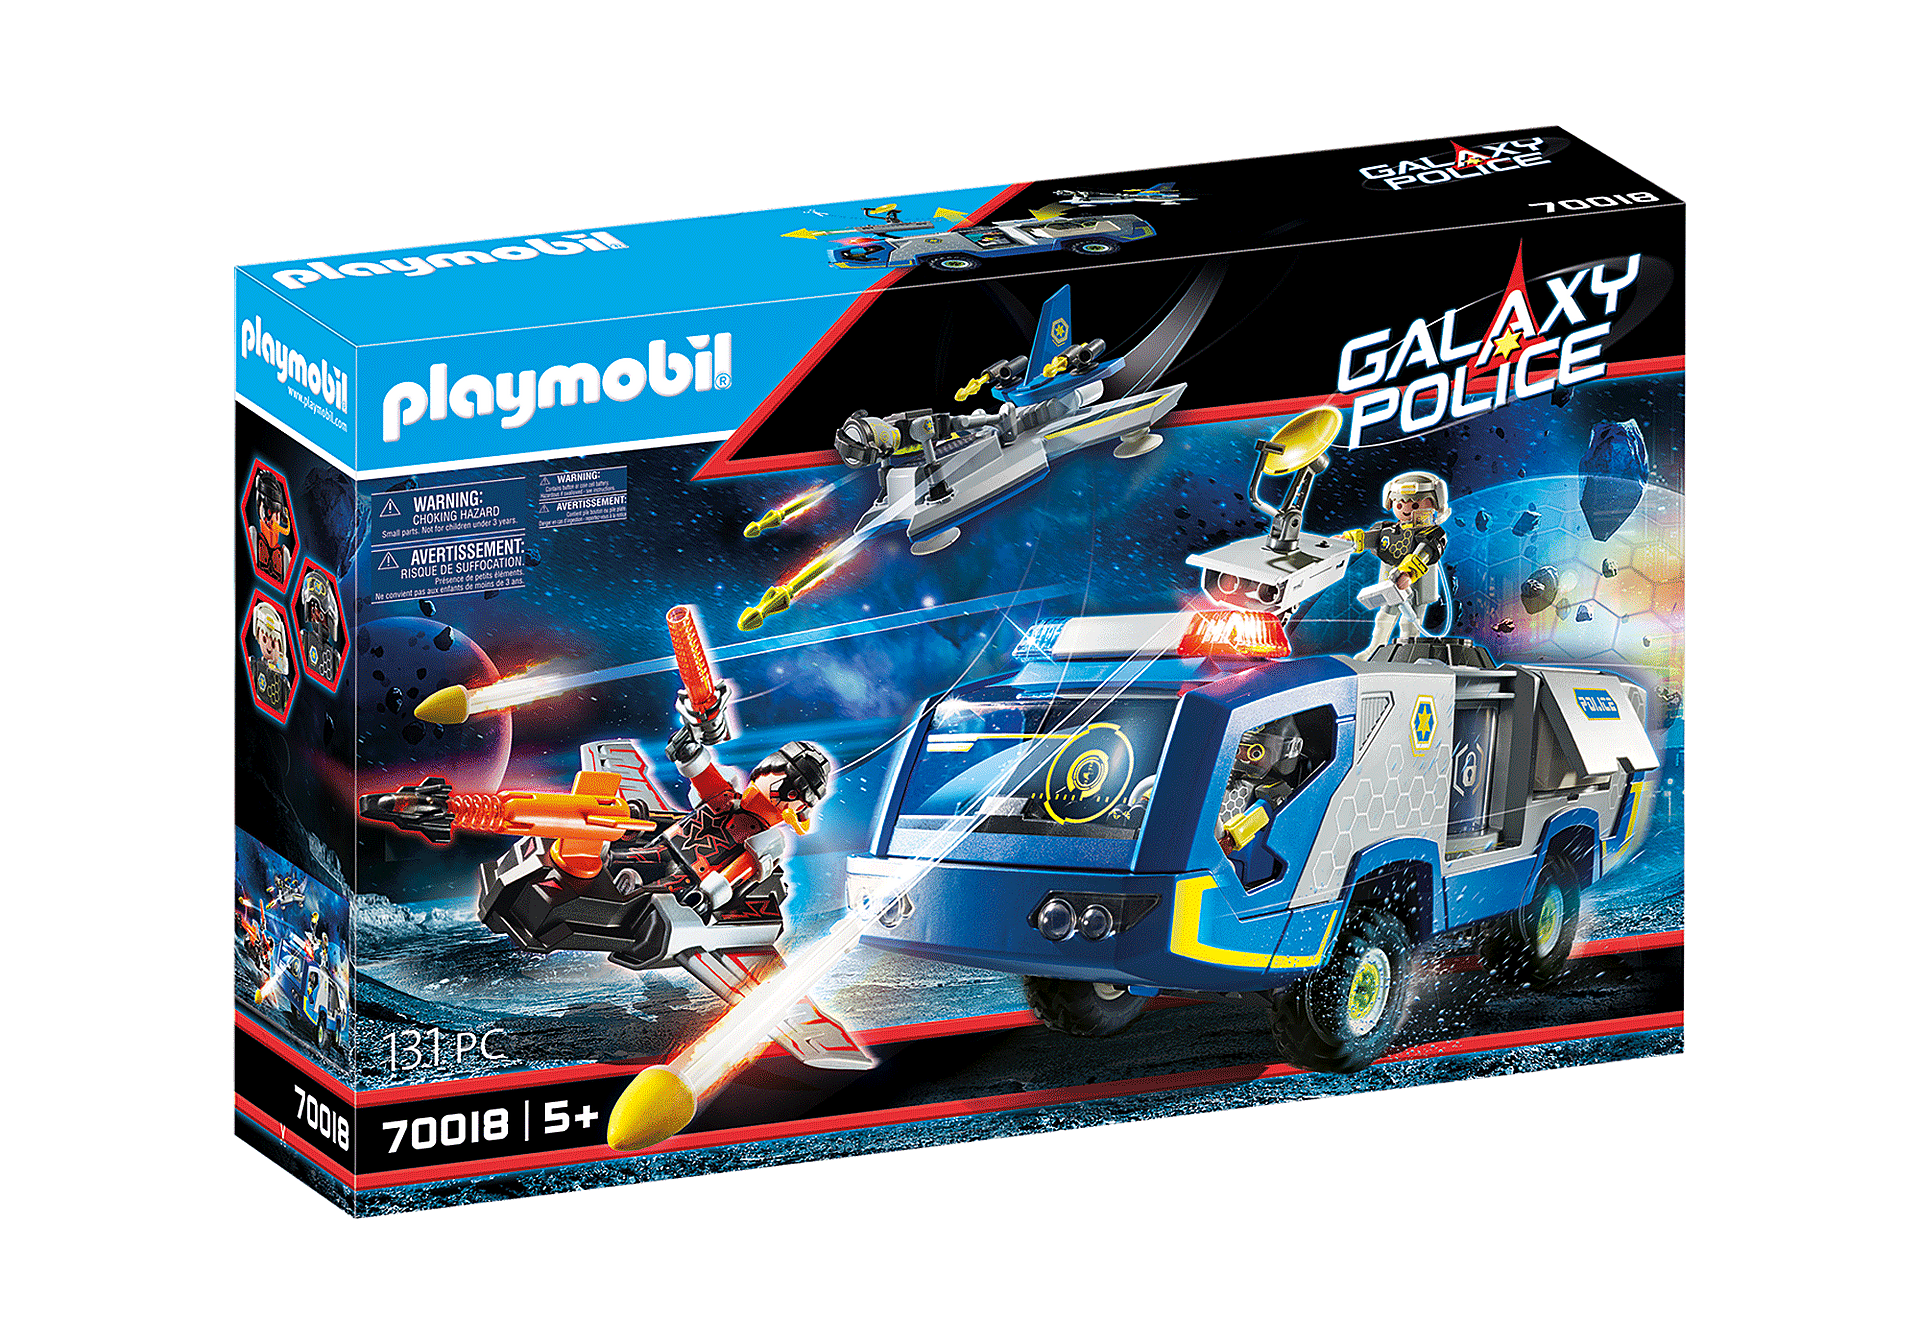 Playmobil - Galaxy Police Truck (70018)